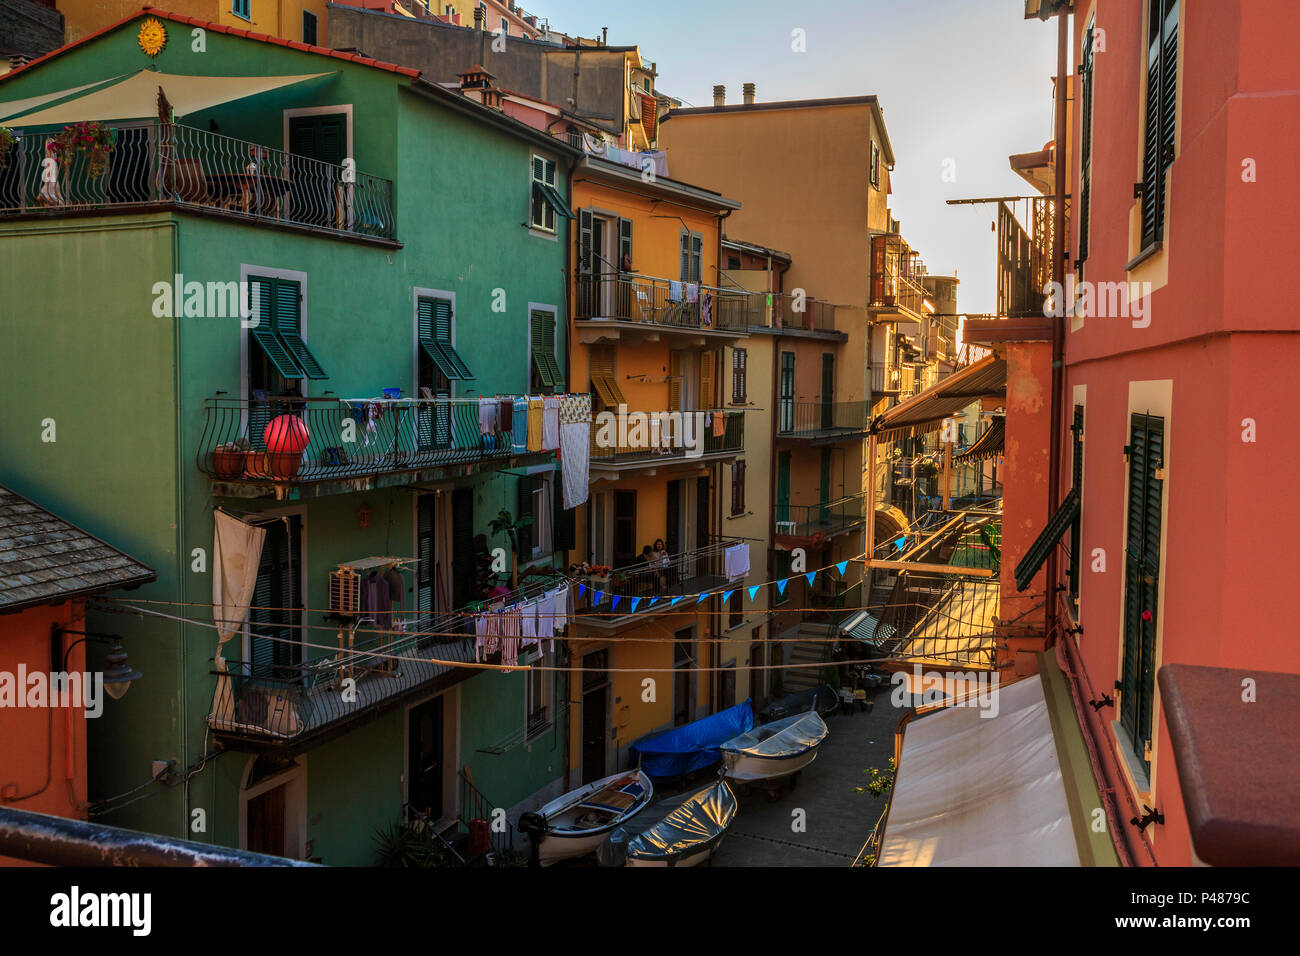 Manarola, Cinque Terre, tranquila tarde escena callejera con coloridas casas y signos de la vida cotidiana. Foto de stock